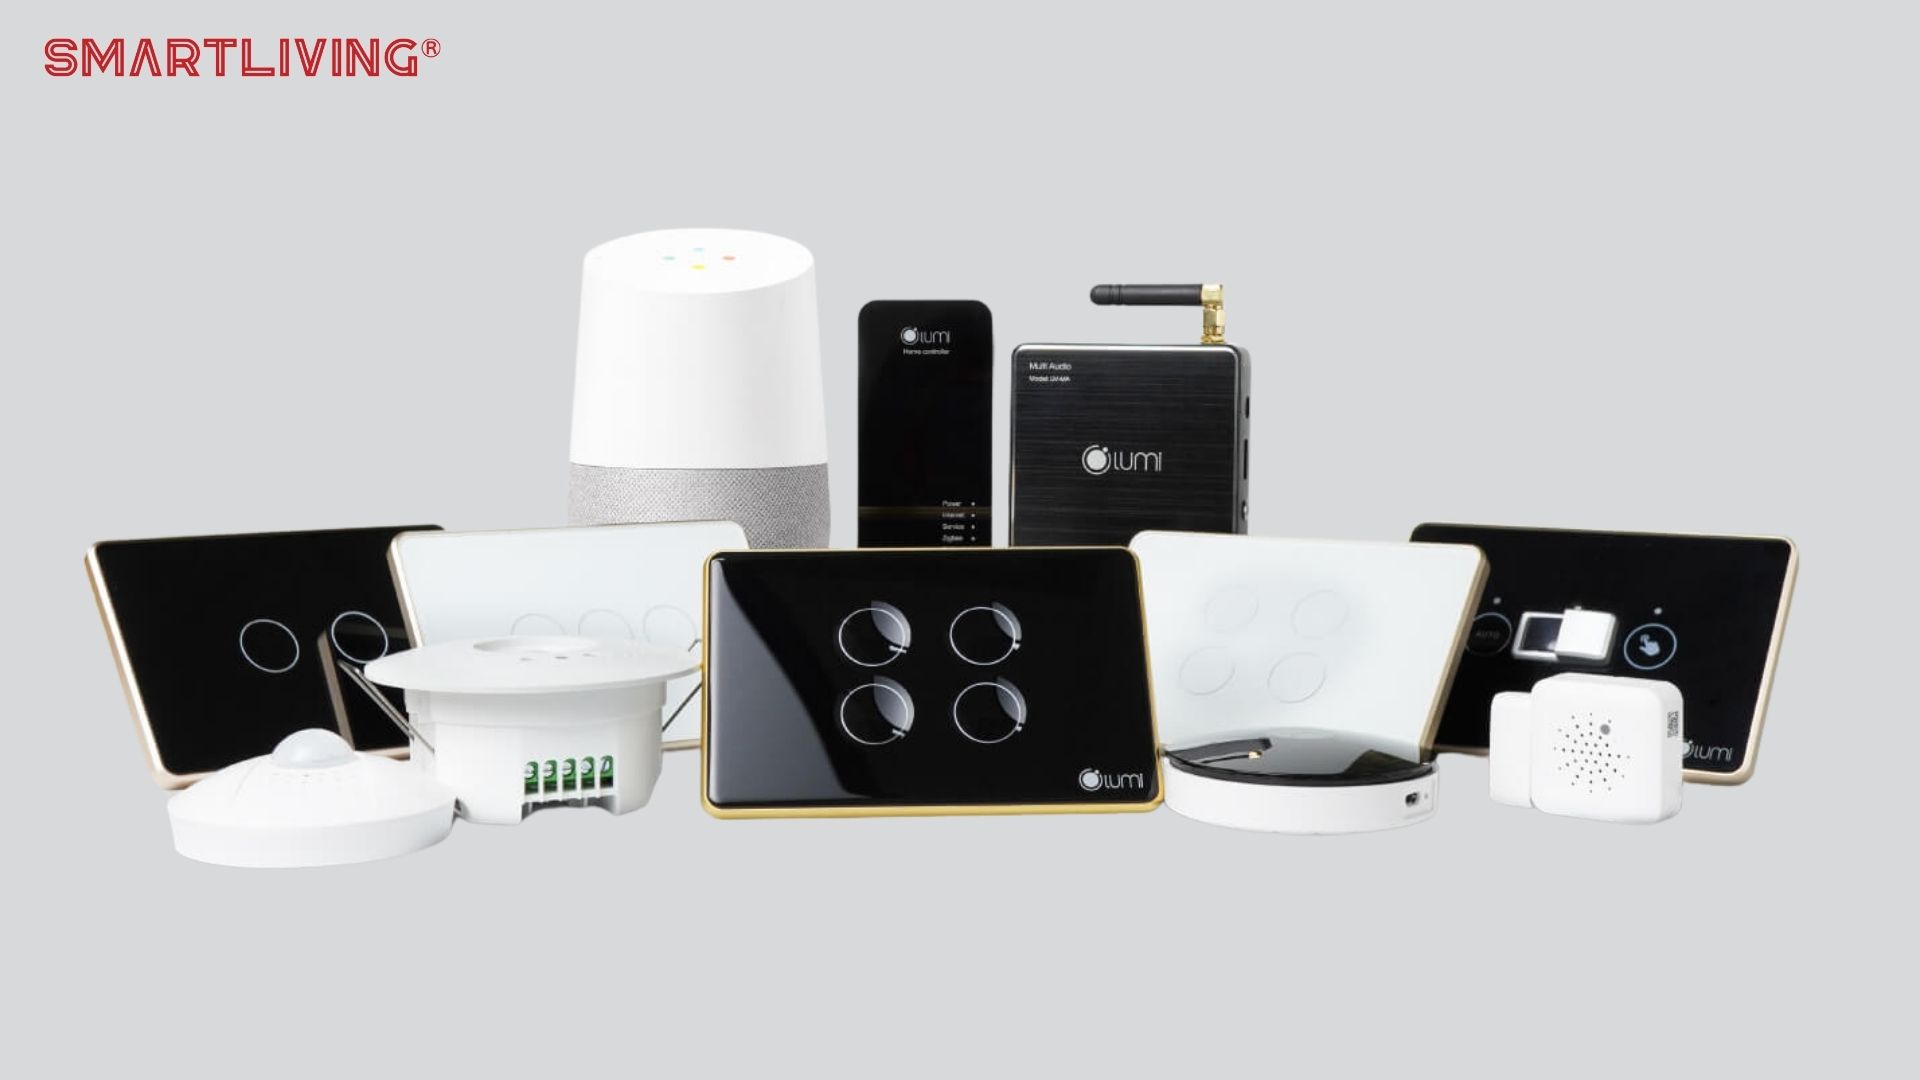 Lumi Smart Home là một trong các hãng nhà ở thông minh tại Việt Nam sử dụng chuẩn kết nối không dây Zigbee